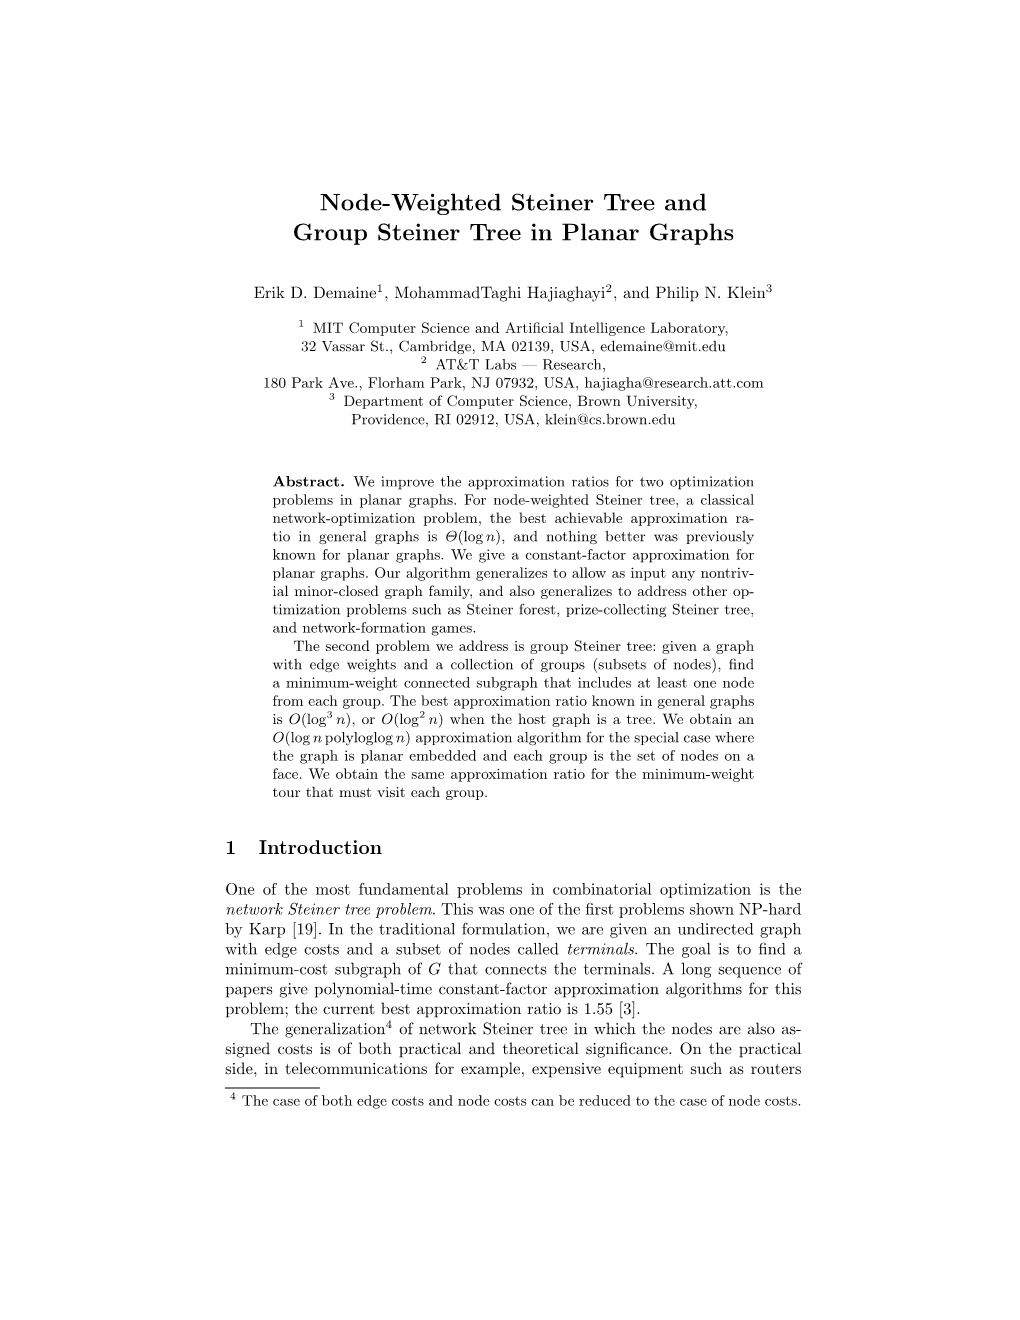 Node-Weighted Steiner Tree and Group Steiner Tree in Planar Graphs